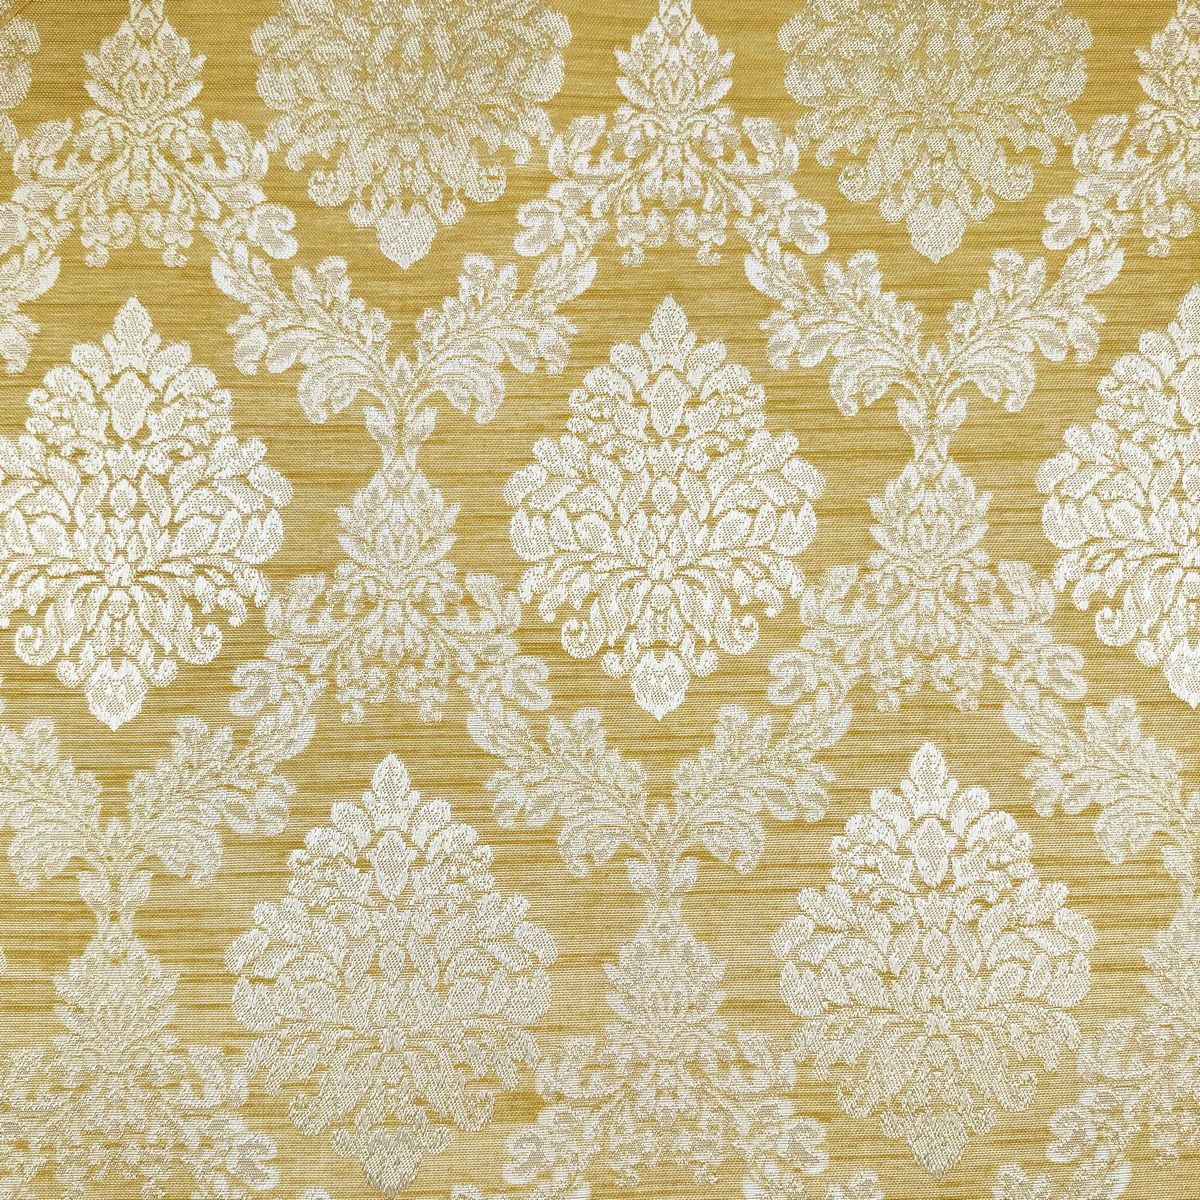 Downton Ochre Fabric by Chatham Glyn